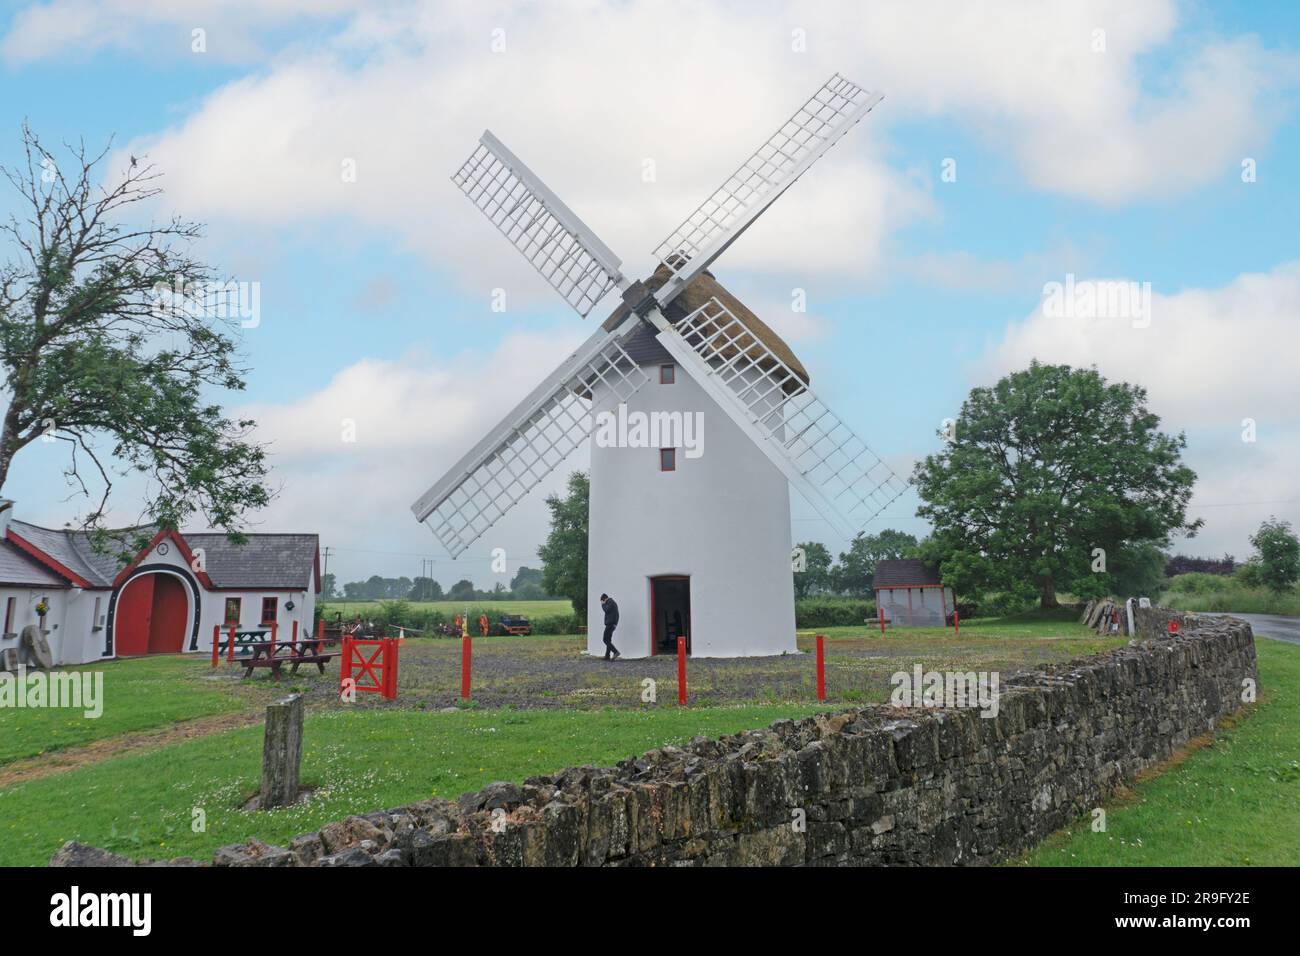 Elphin Windmill and Agricultural Museum à Elphin, Roscommon, Irlande. Le moulin à vent date de 1730. Rénové en 1996. Il possède une section de toit en chaume Banque D'Images